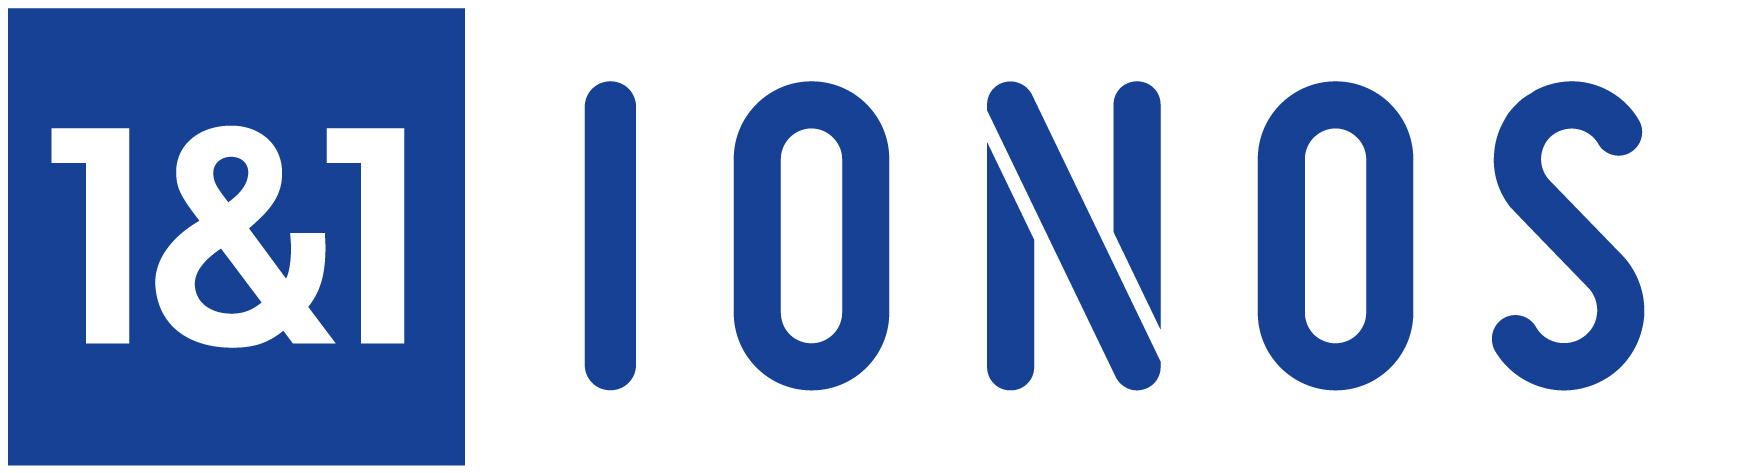 Logo 1&1 IONOS